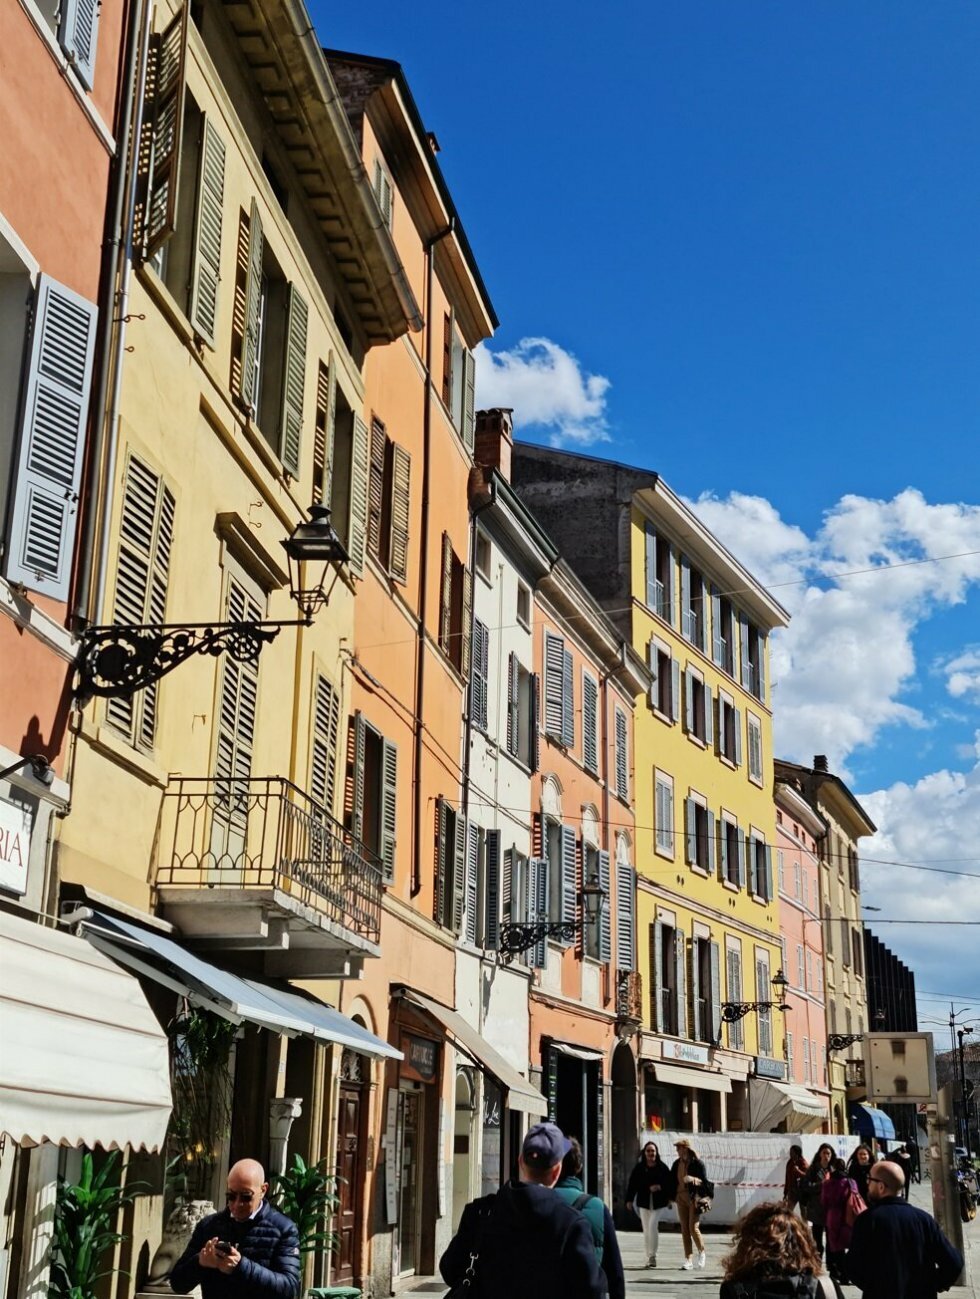 Smukke bygader i Parma. - Rejse-reportage: På oste- og skinkeeventyr i Parma Italien